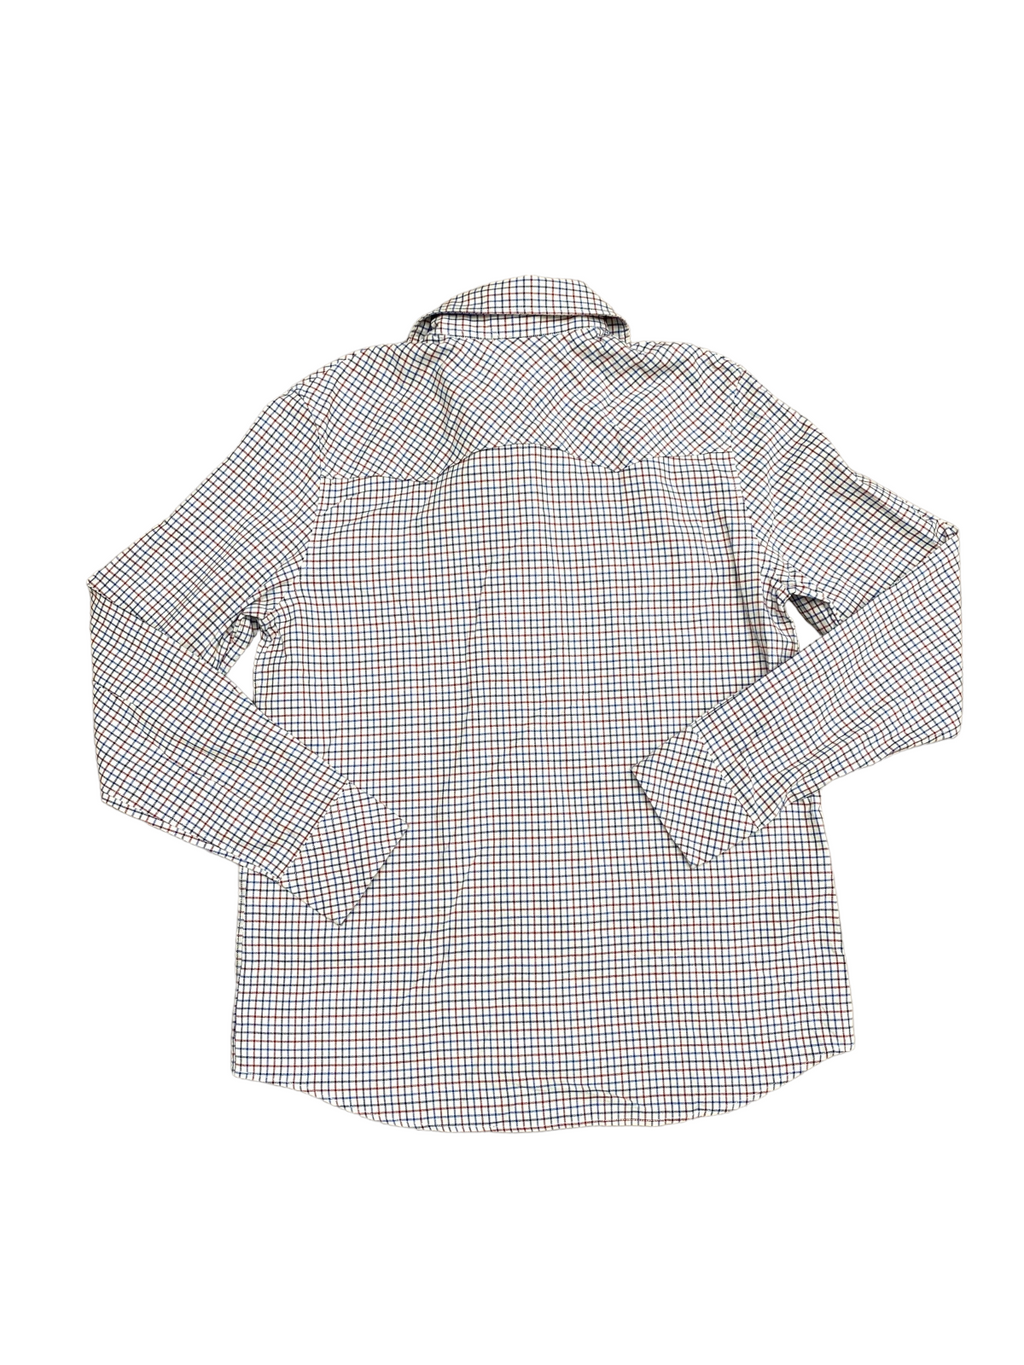 Checkered shirt